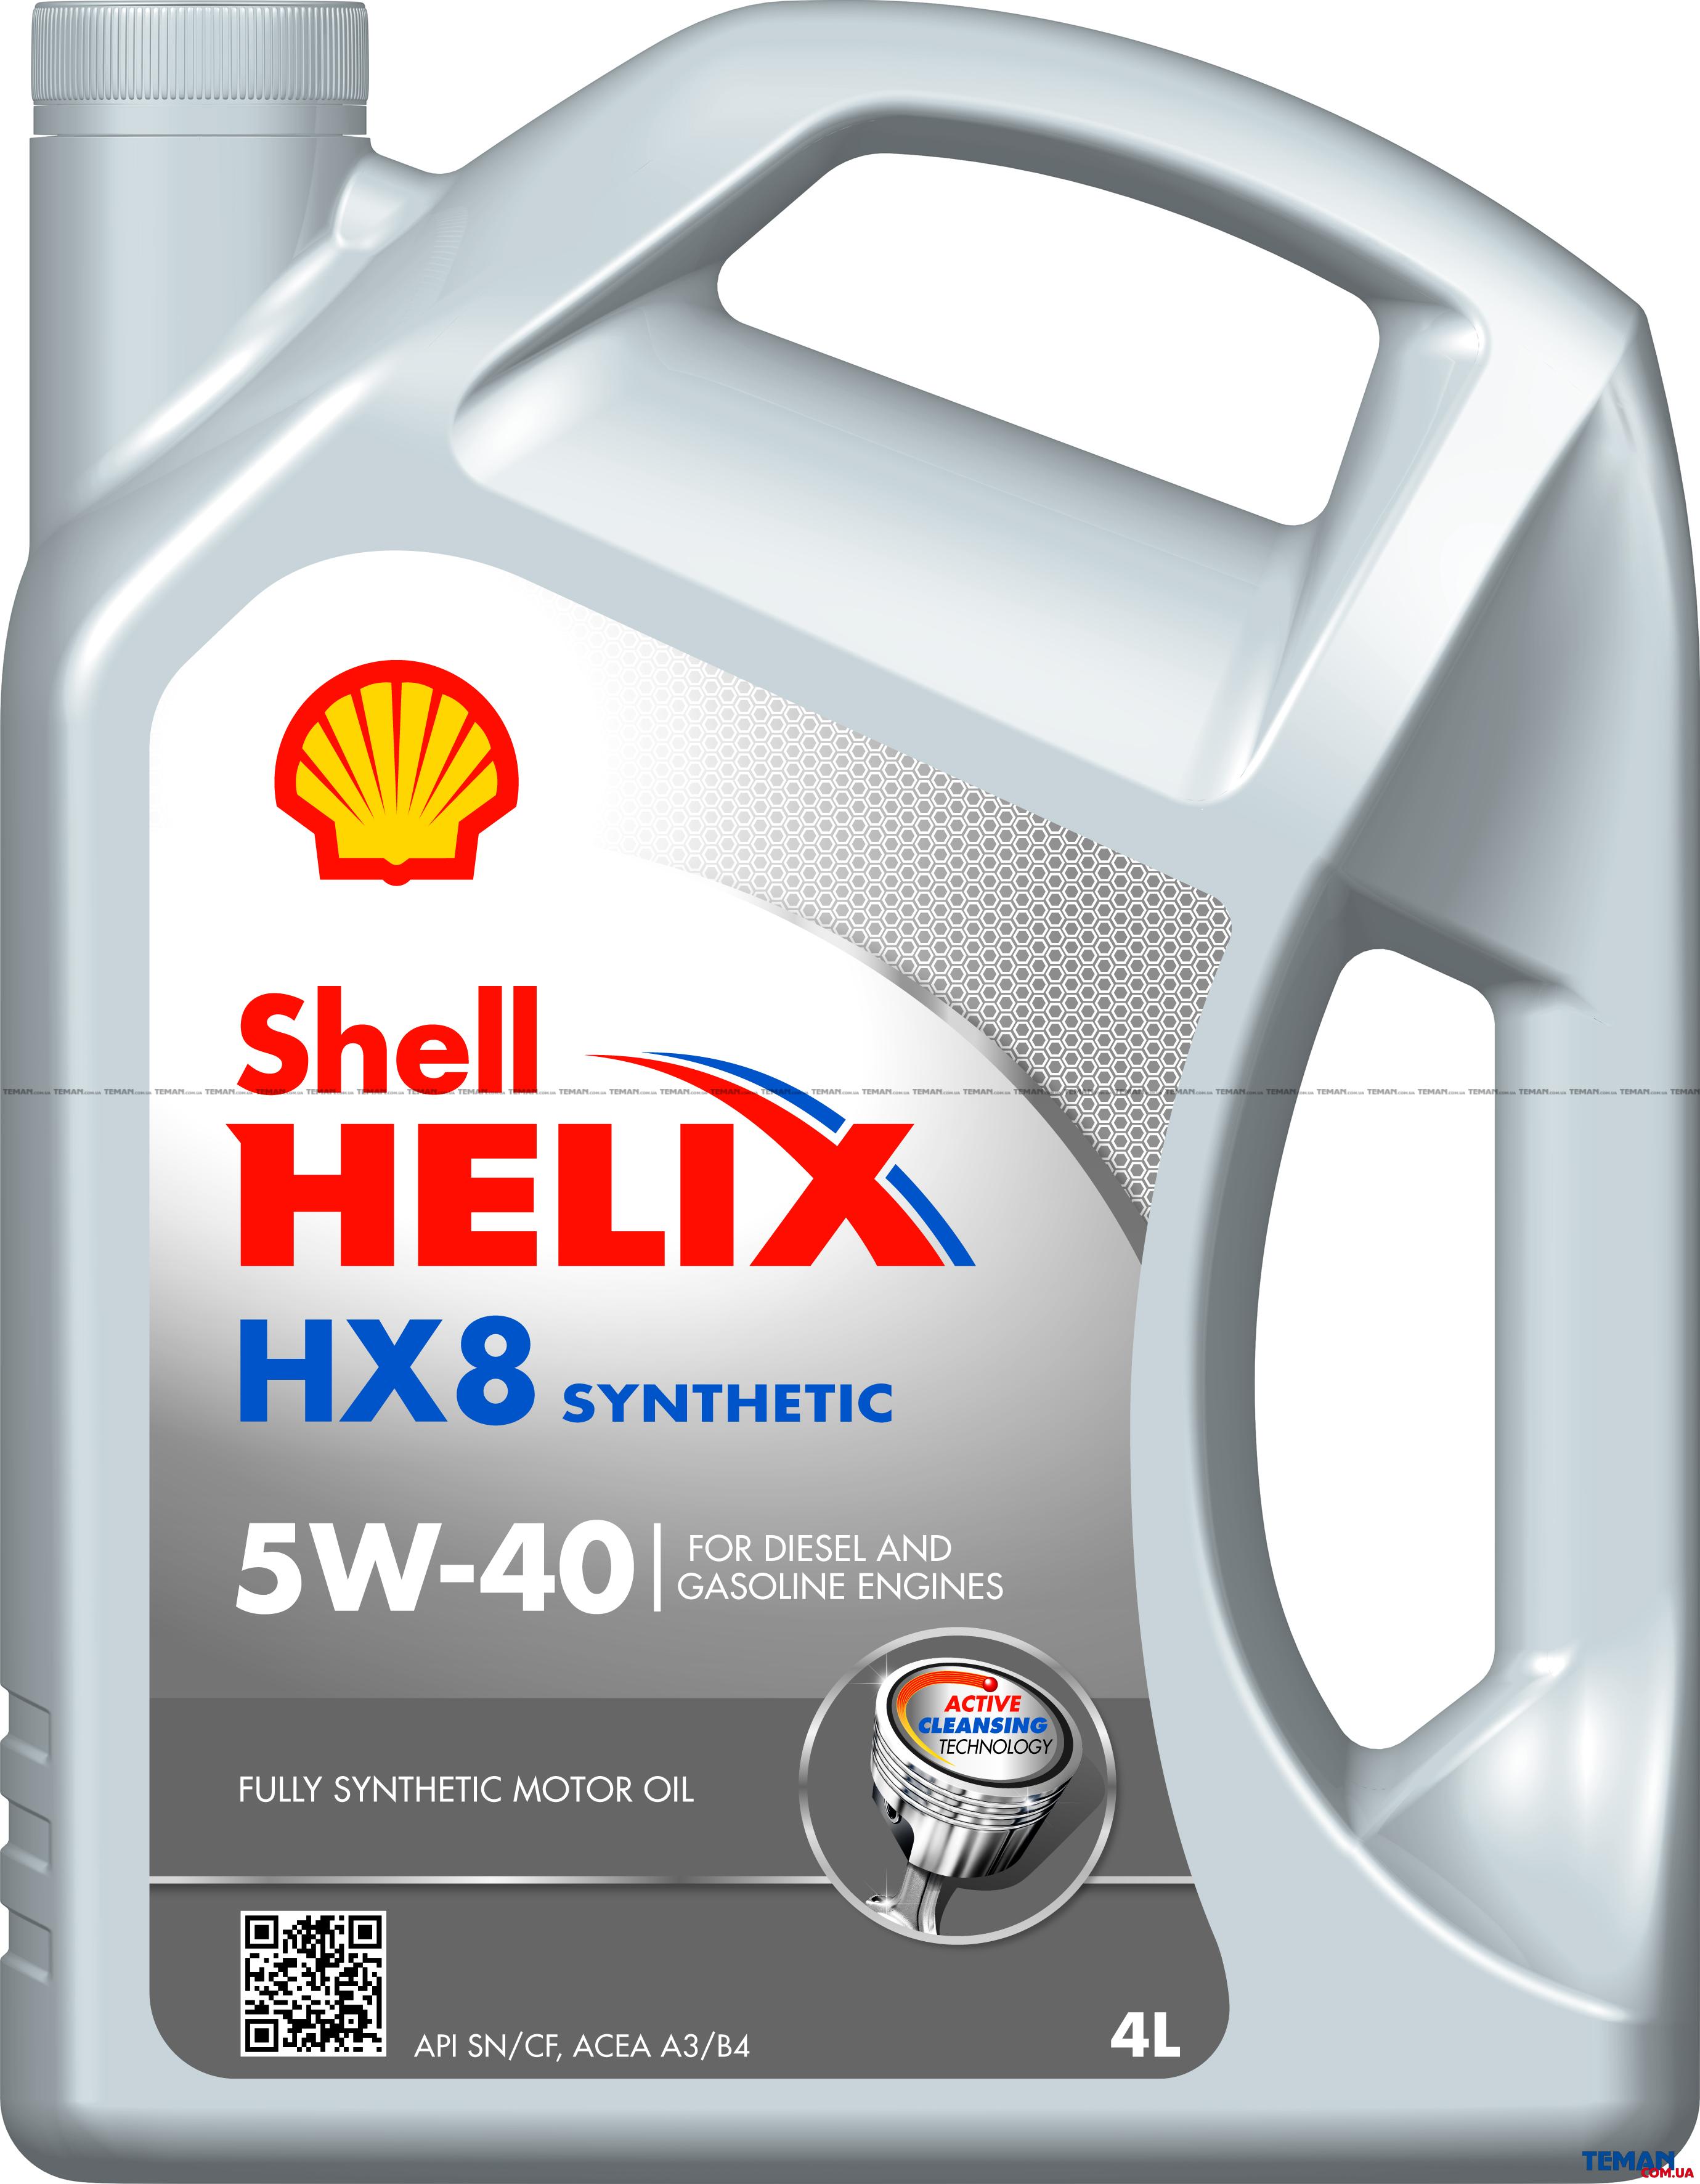  Купить Моторное масло Shell Helix HX8 5W-40 4лSHELL helixhx85w404l   